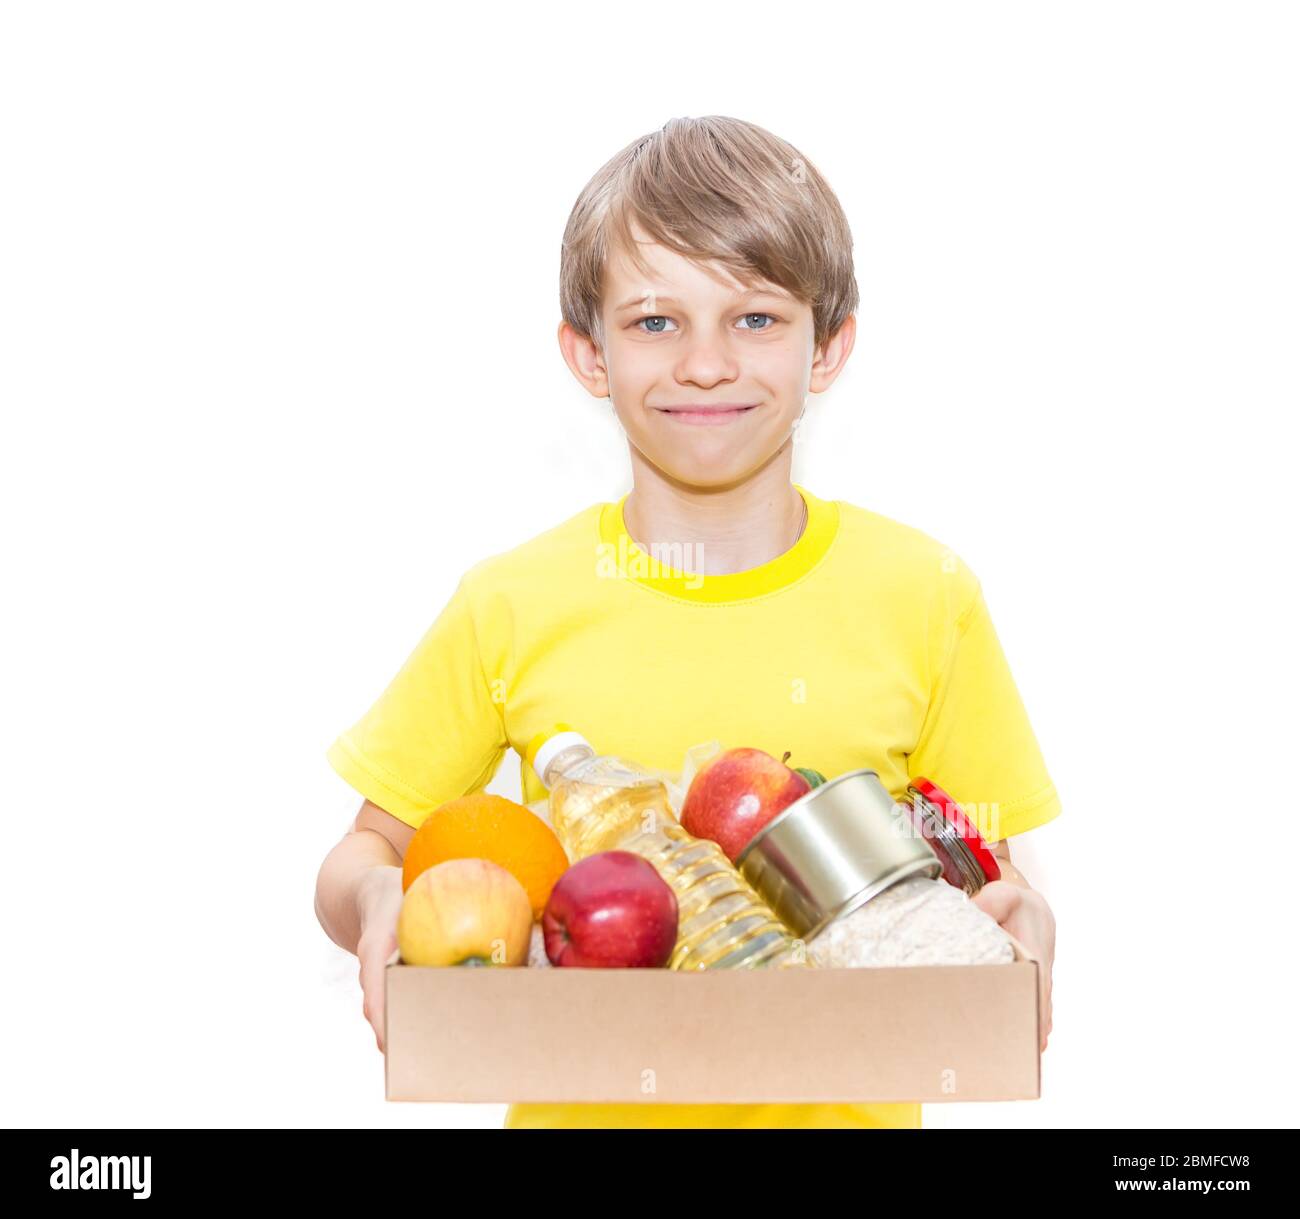 Glücklicher Junge hält eine Kiste mit Nahrung, isoliert auf weißem Hintergrund. Lieferung von Lebensmitteln. Freiwilliger bringt einen Lebensmittelkasten. Stockfoto